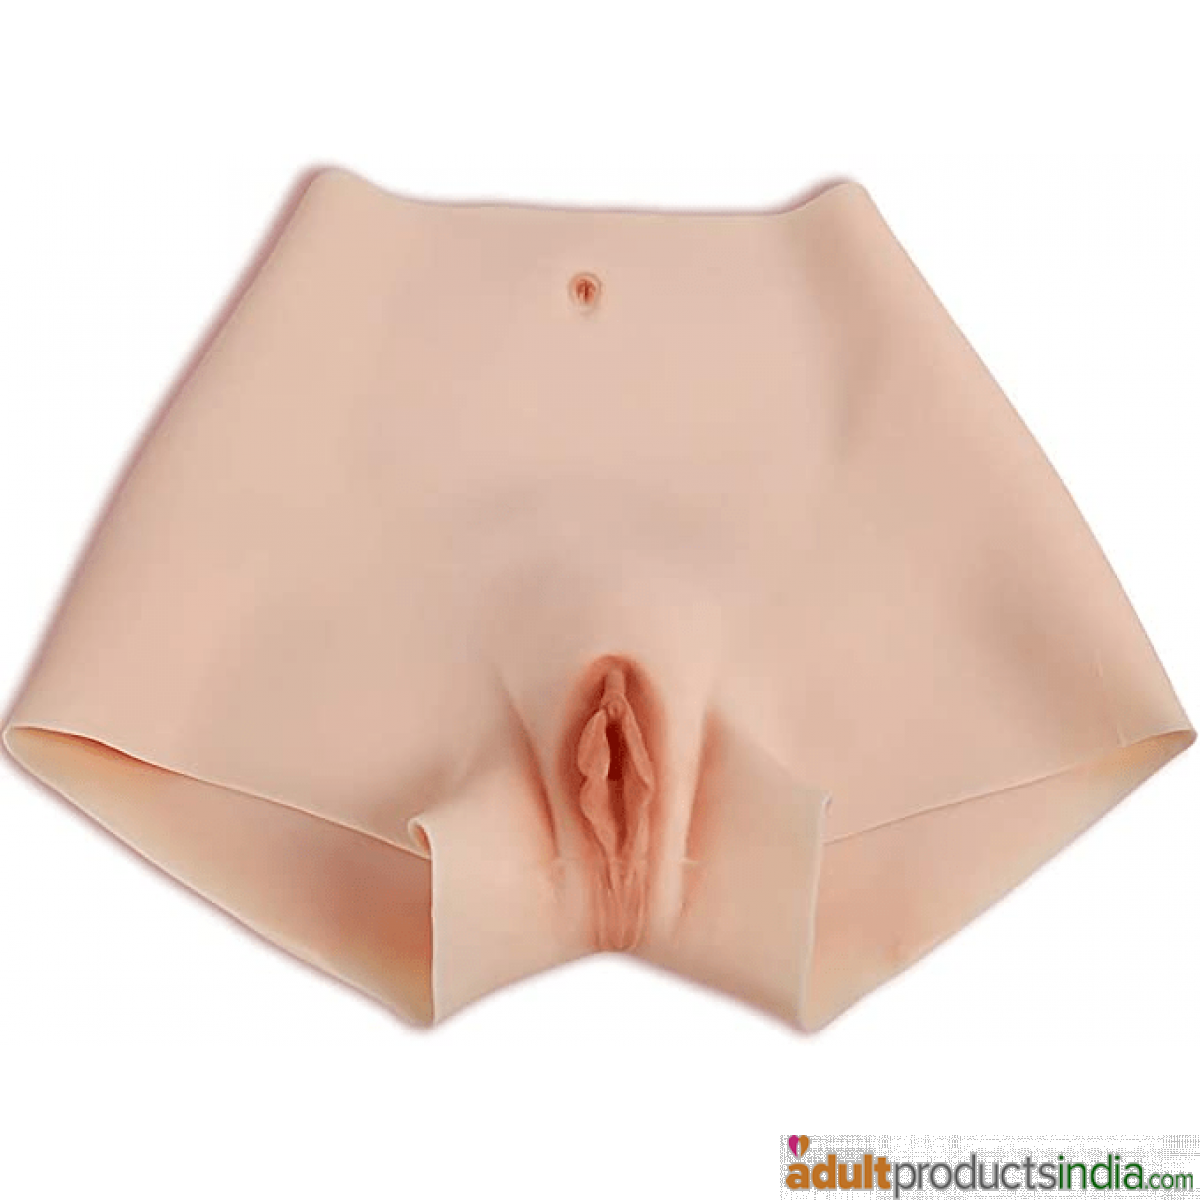 Artificial Vagina Panties for Crossdresser &Transgender